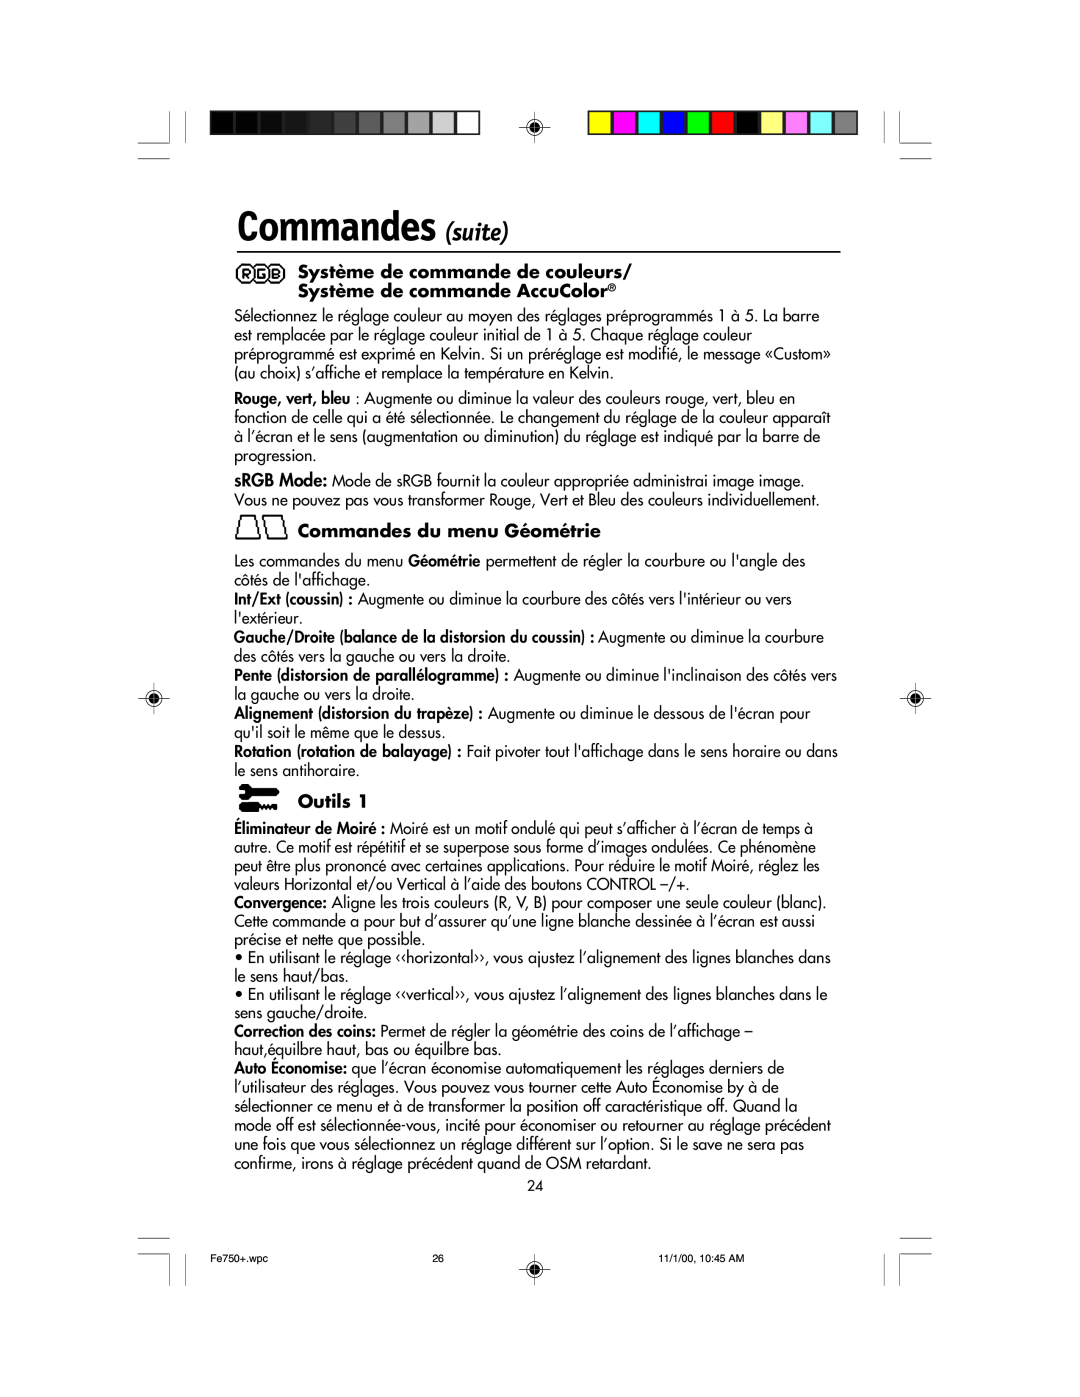 NEC FE750 Plus Commandes suite, Système de commande de couleurs Système de commande AccuColor, Commandes du menu Géométrie 